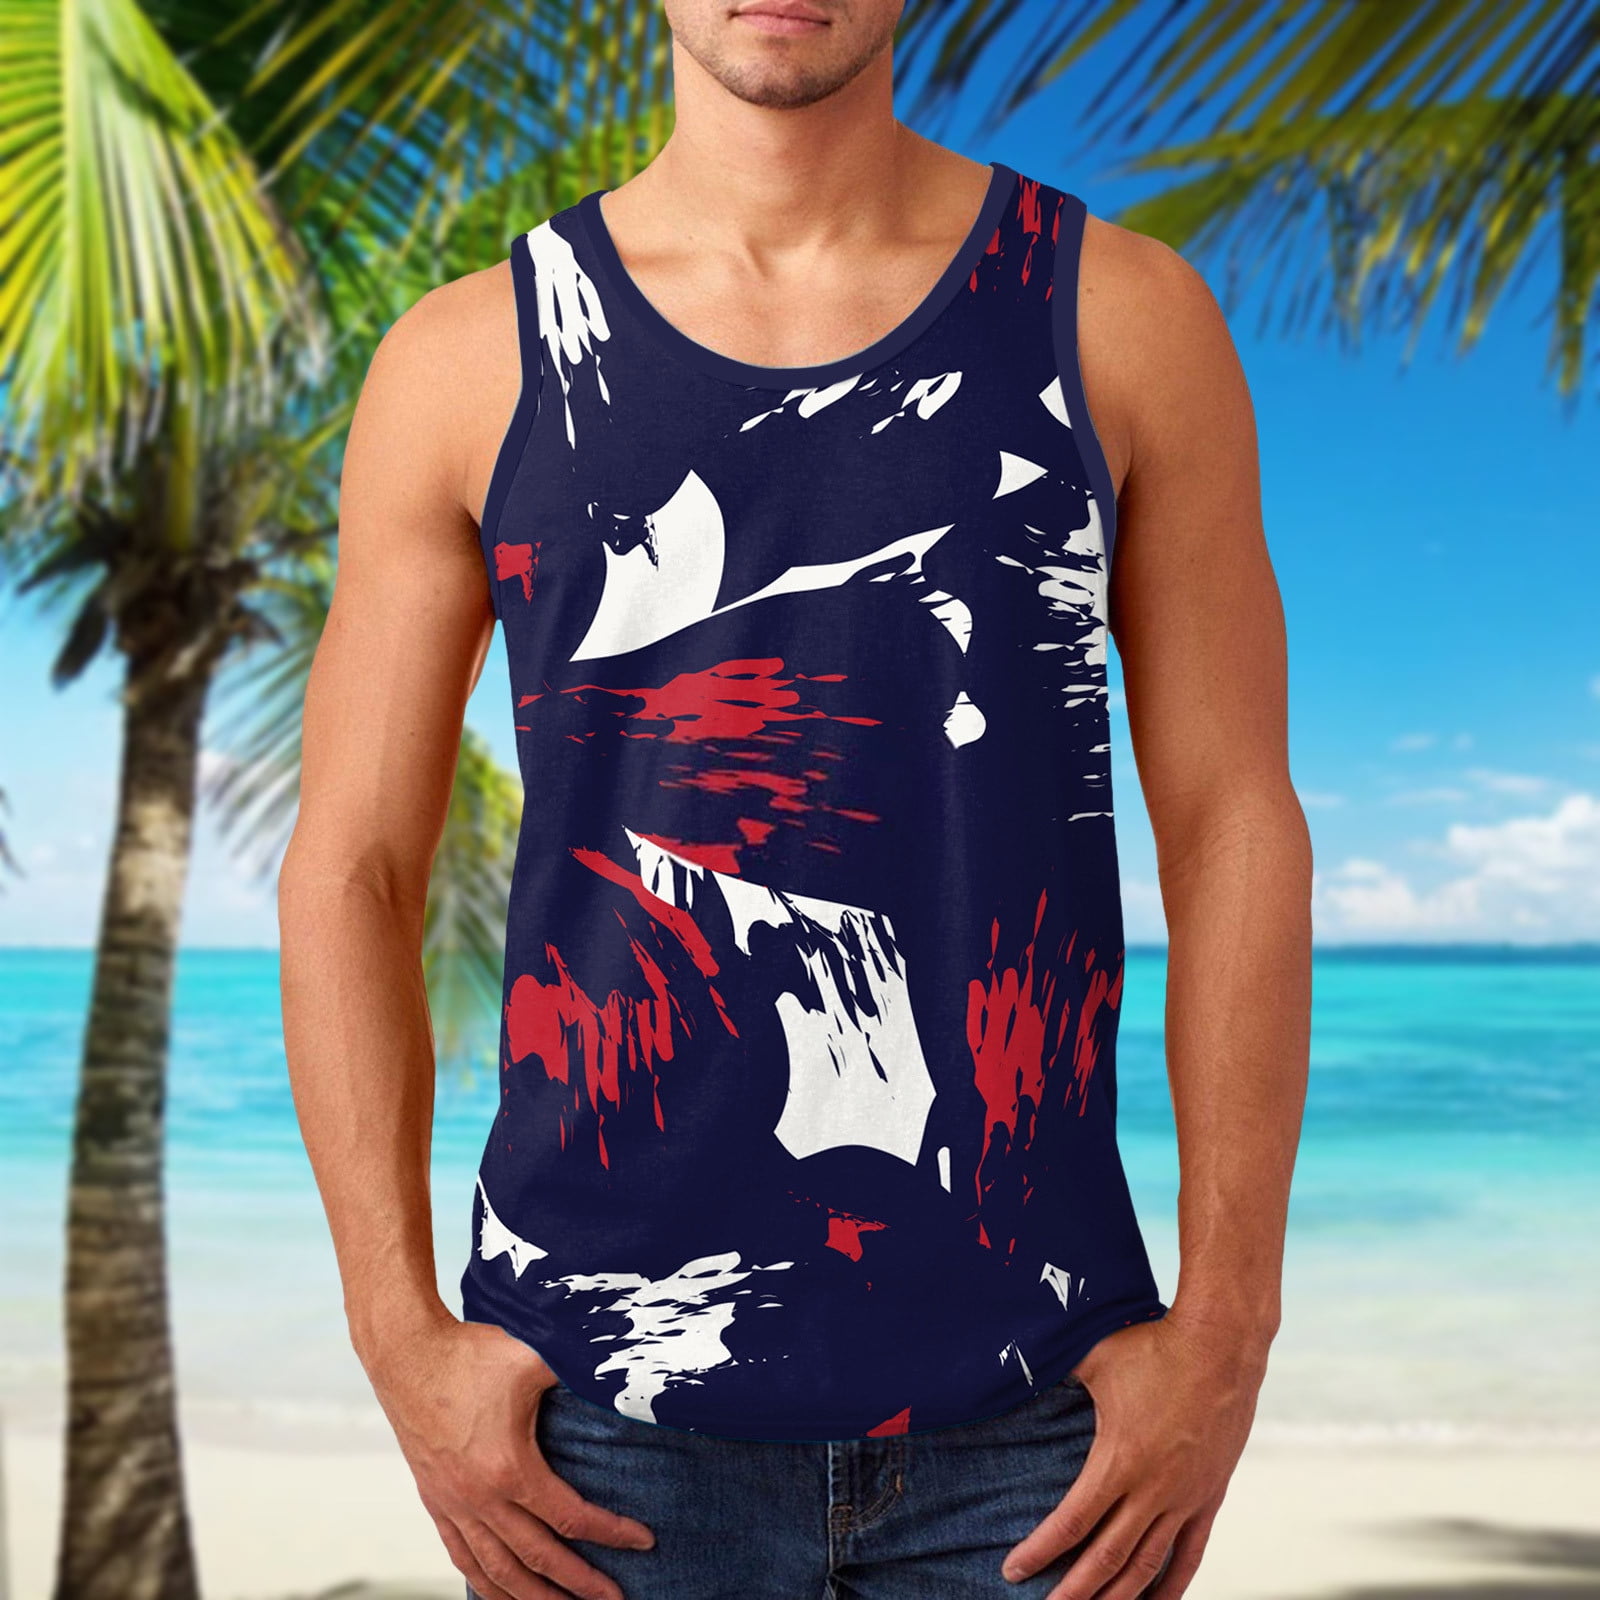 Visualizar Banzai Contratación Tank Tops Men Men Summer Printed Fashion Casual Sports Beach Sleeveless Top  Tank Tops - Walmart.com